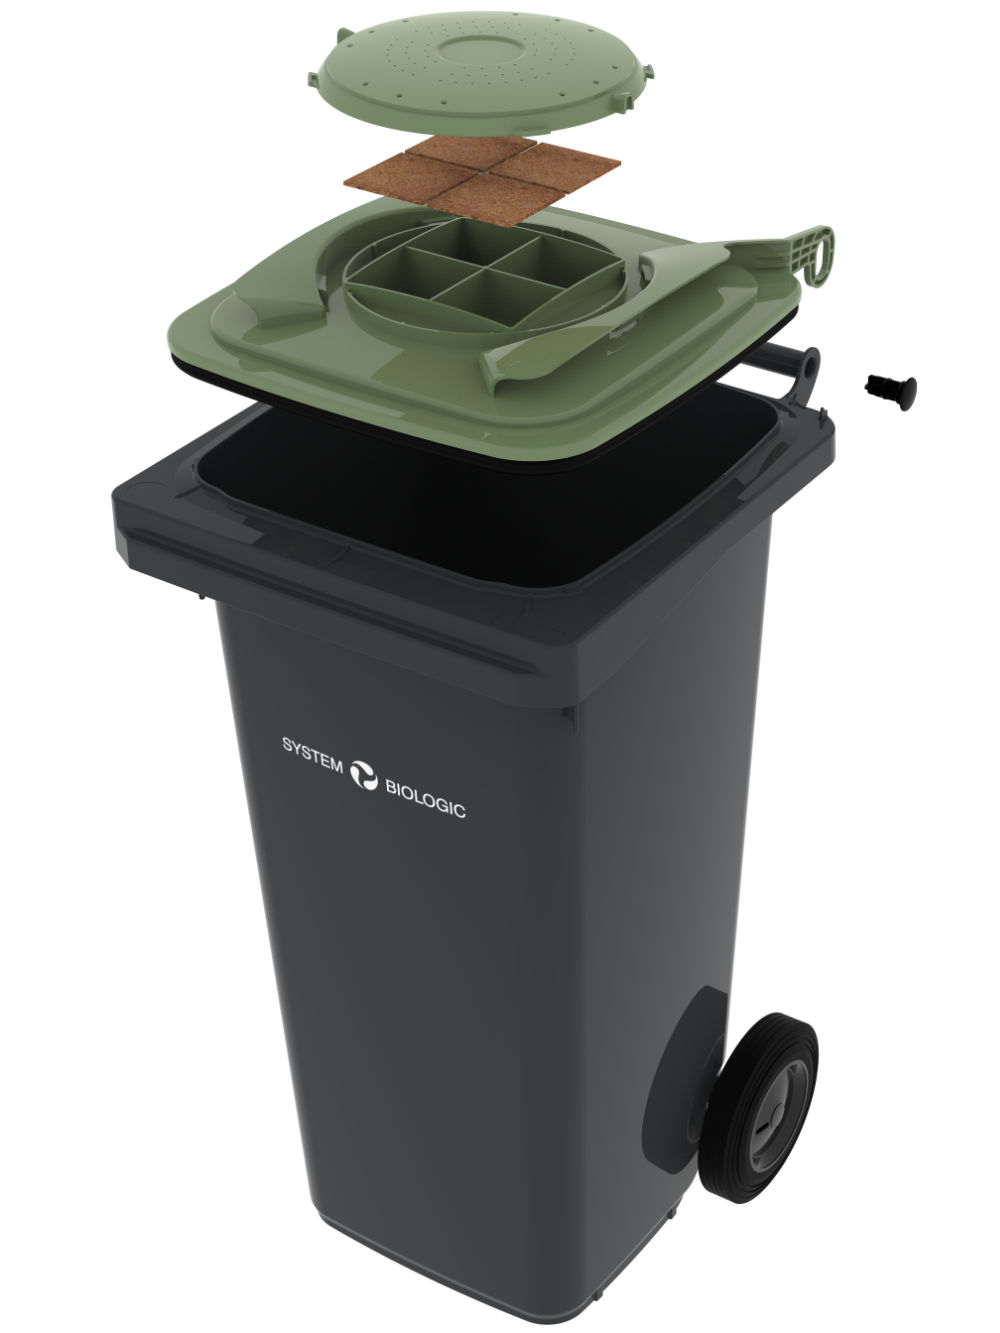 Капак на биофилтъра - Идеалното решение за хигиенично събиране на органични отпадъци